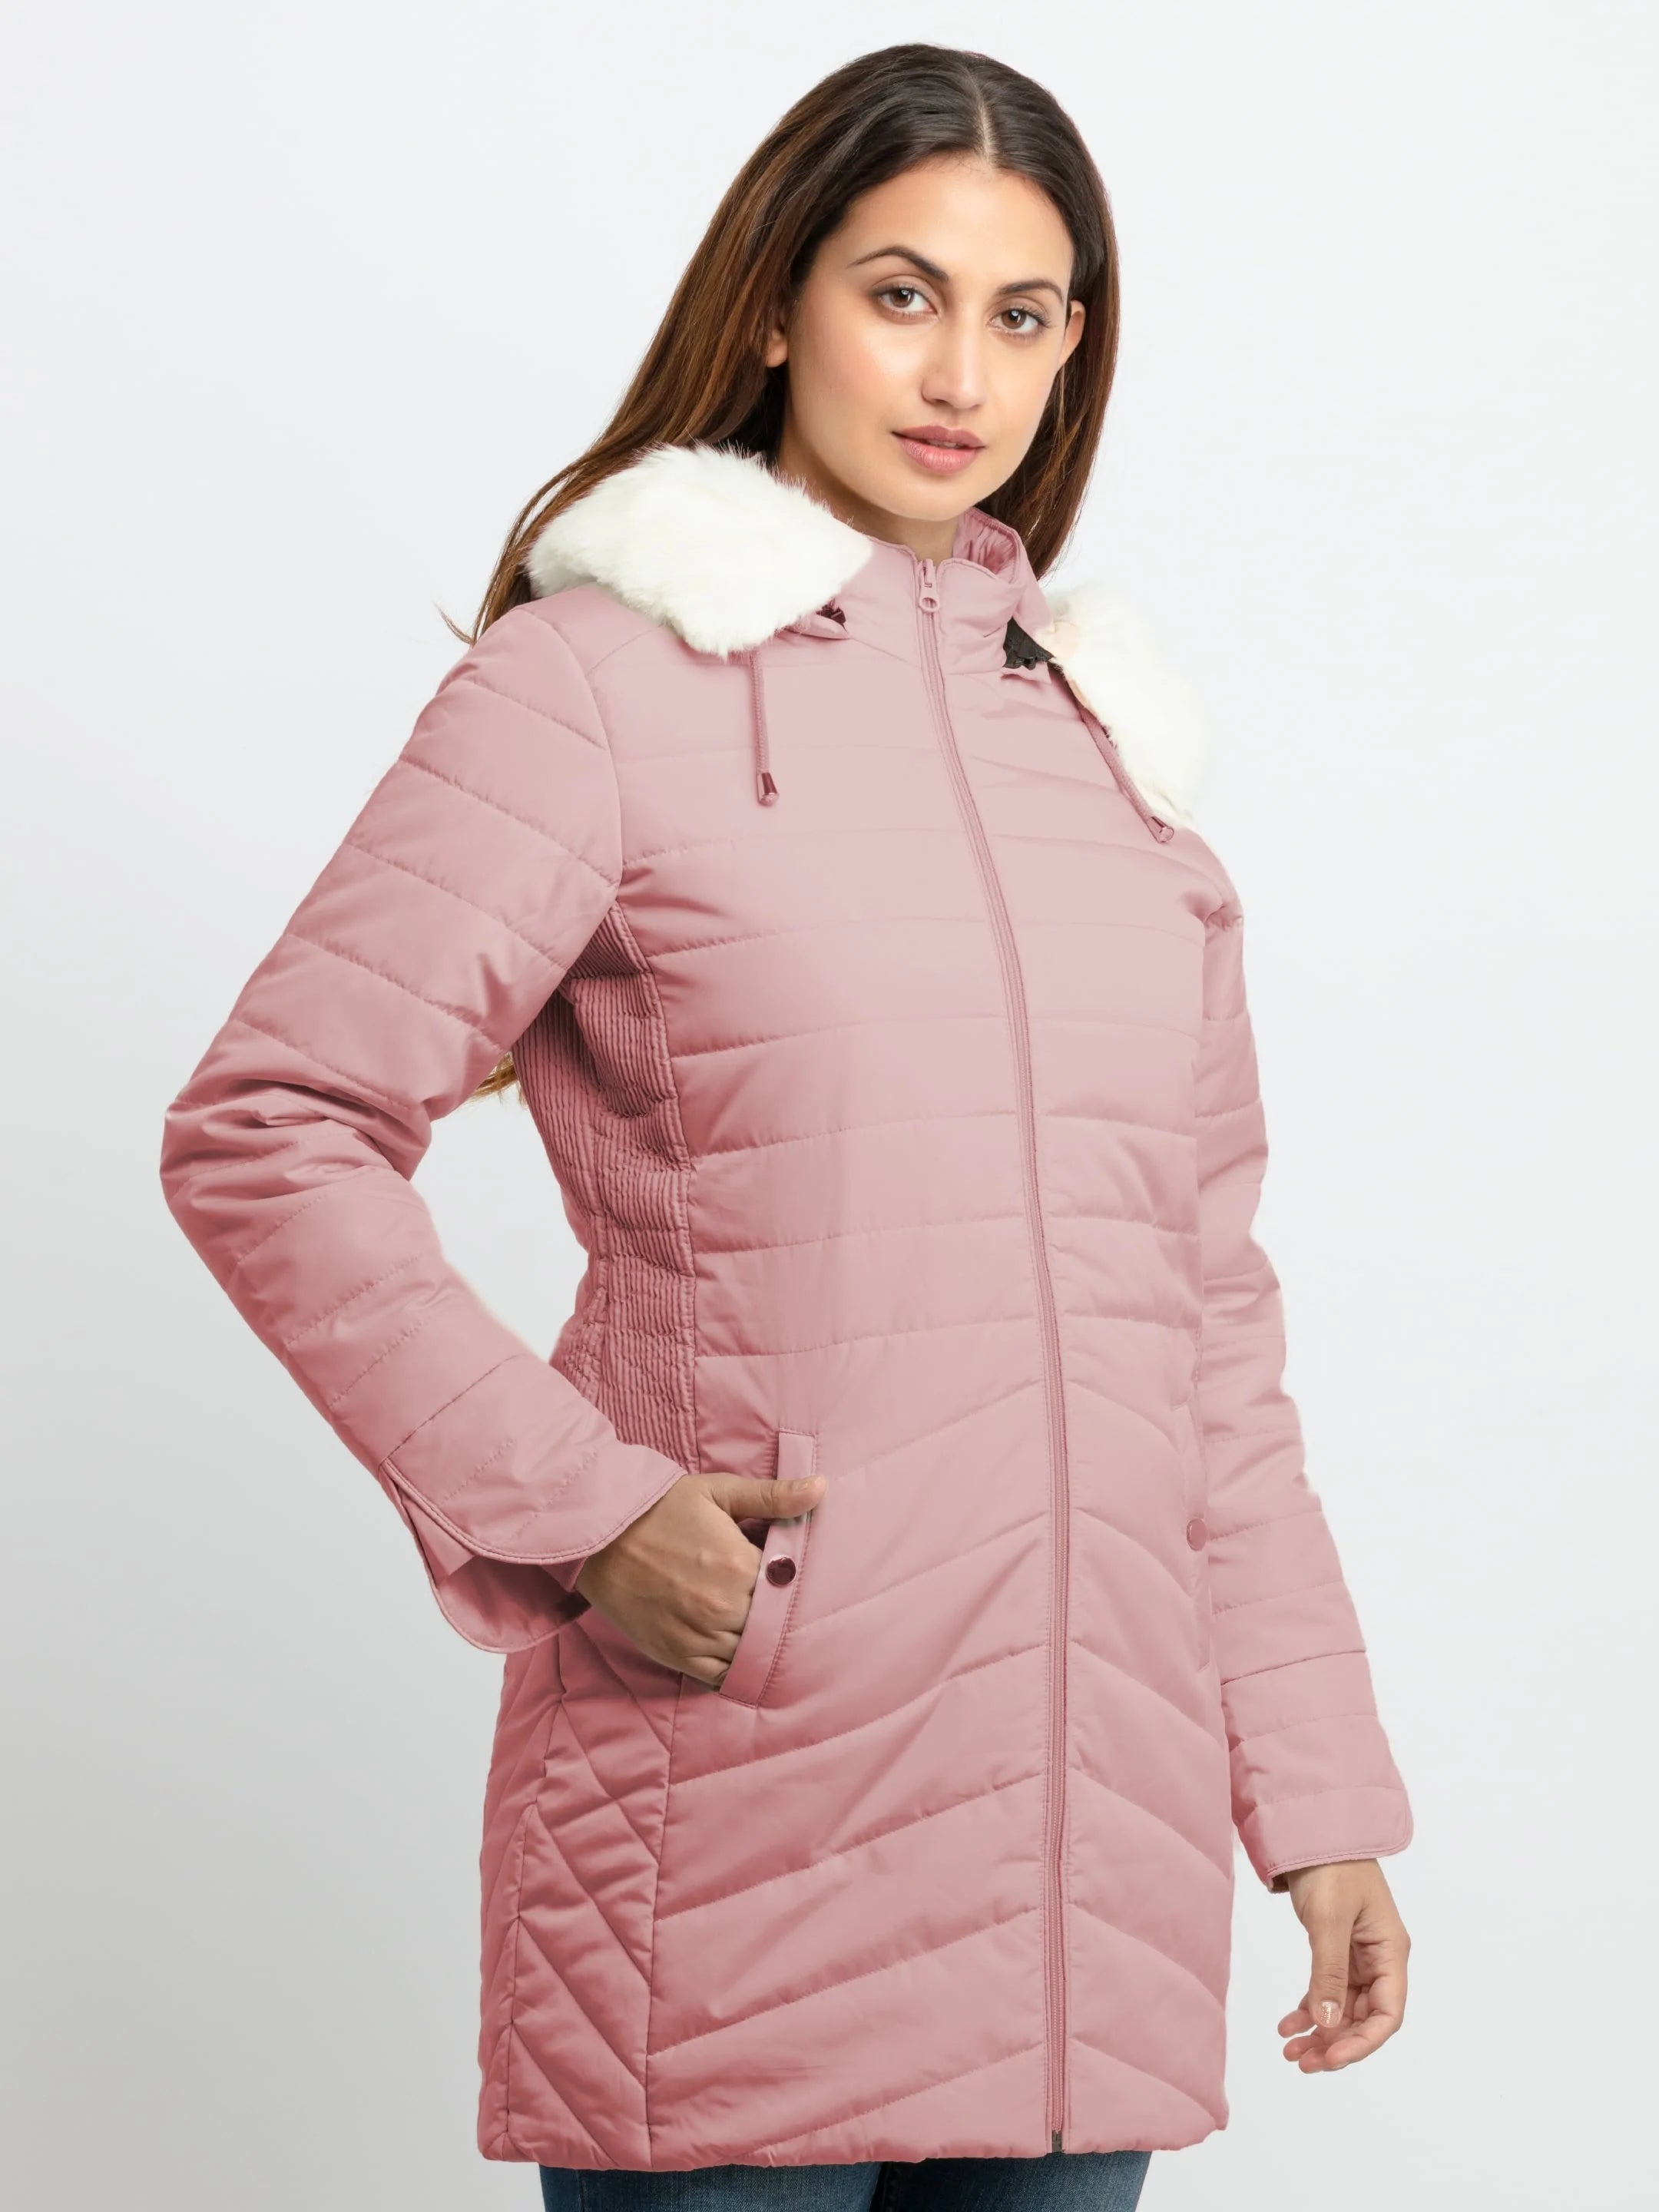 winter jackets for women